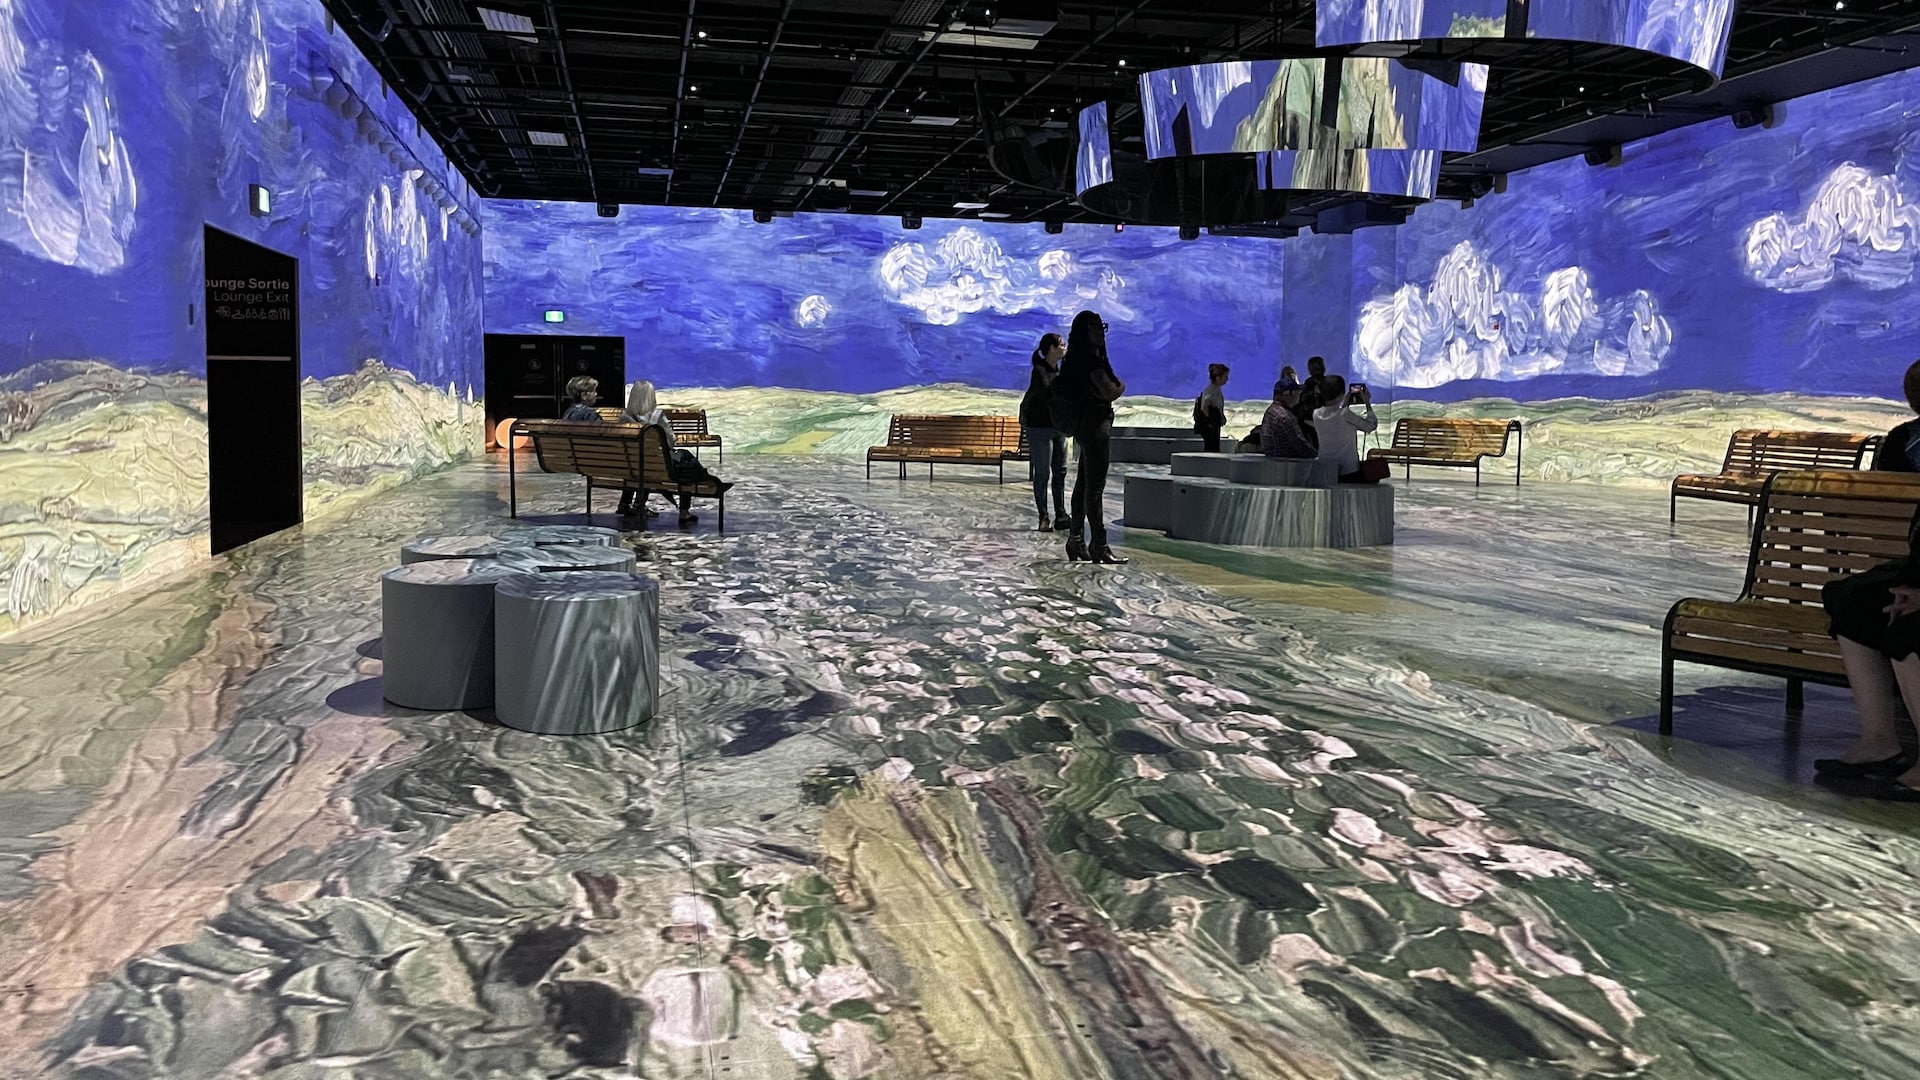 Des visiteuses et visiteurs sont dans une salle ornée d'illustration d'un ciel et nuages à la Vincent Van Gogh.